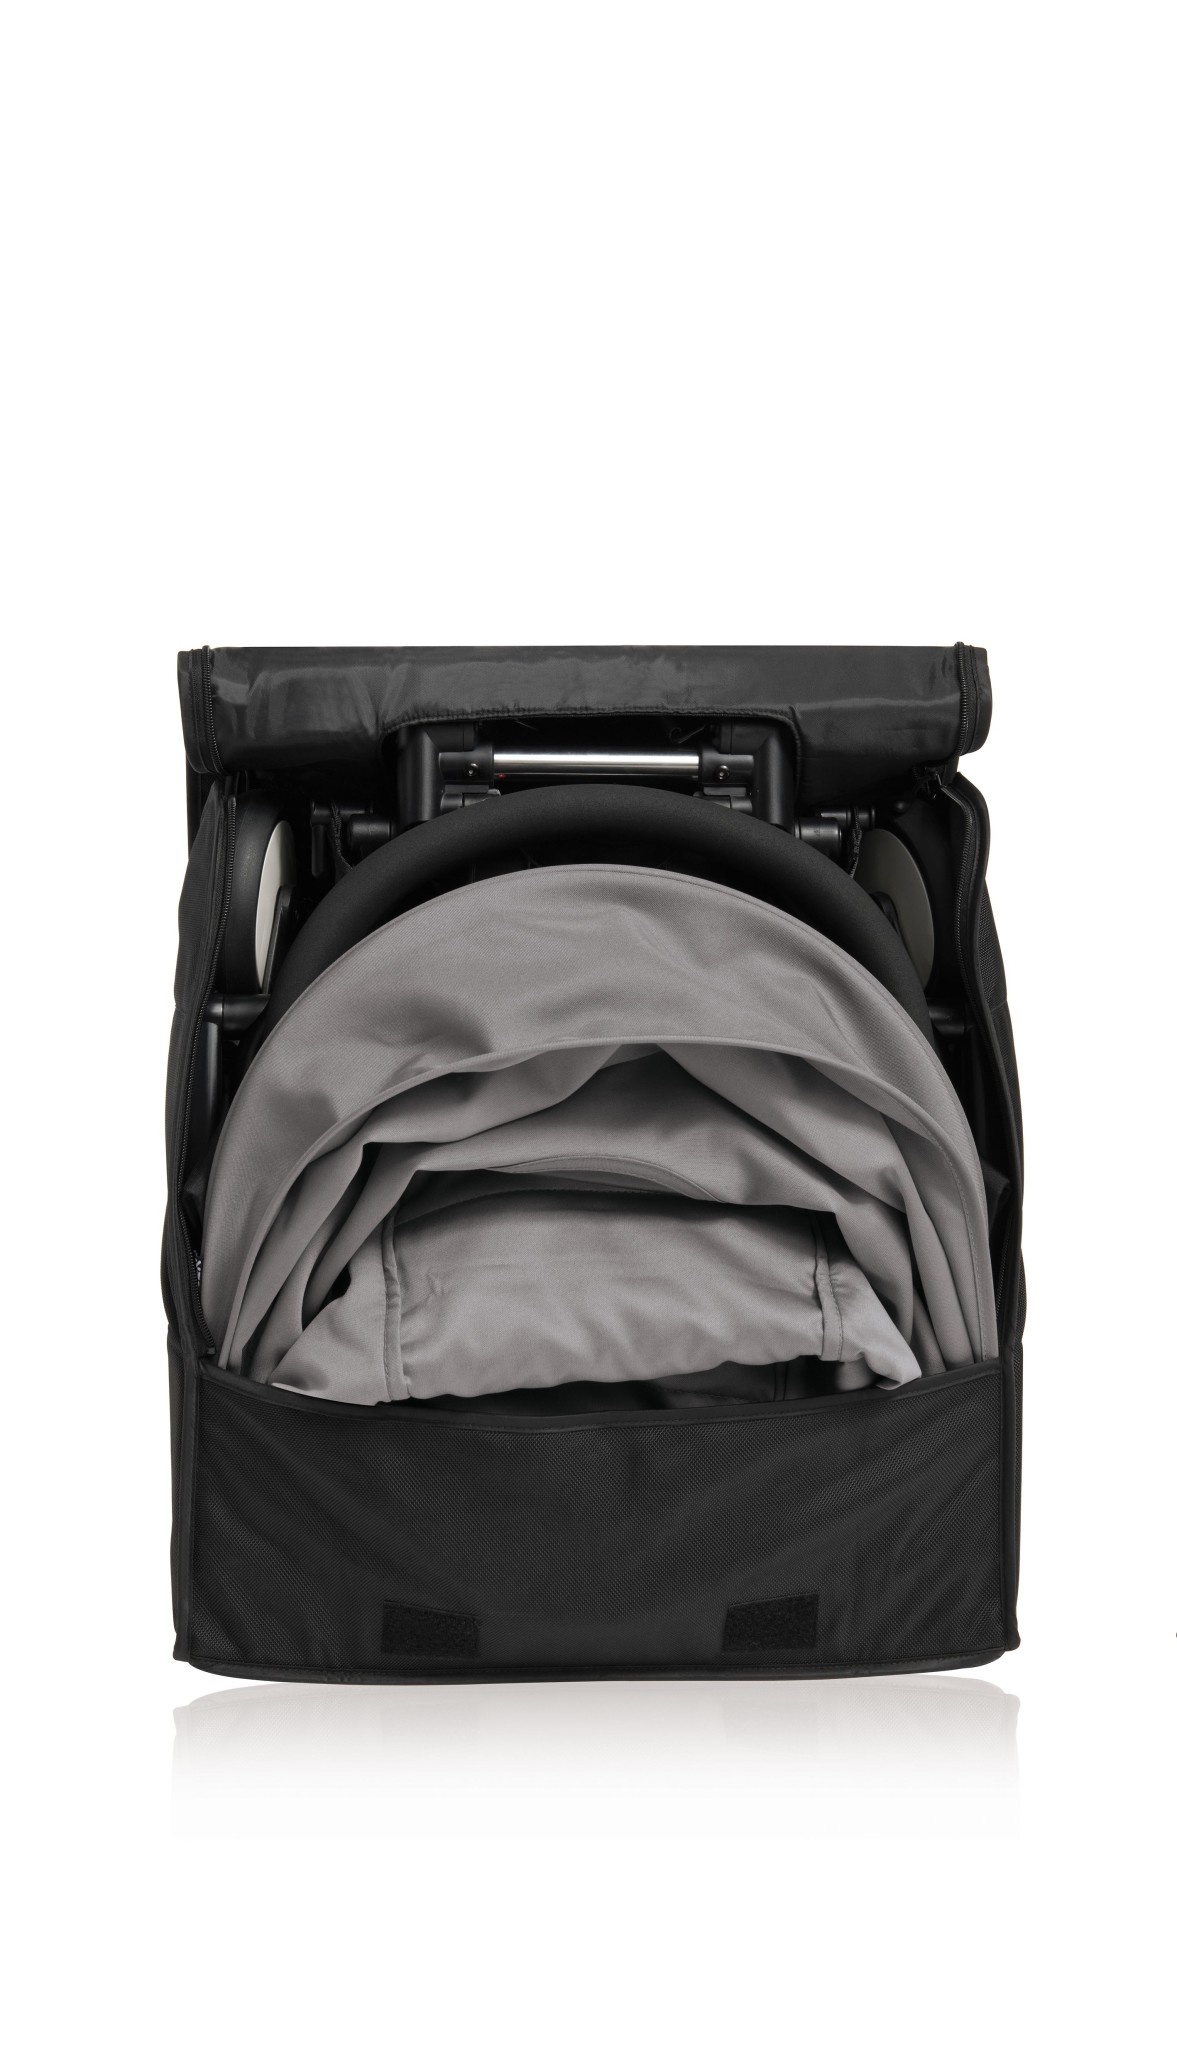 babyzen yoyo backpack